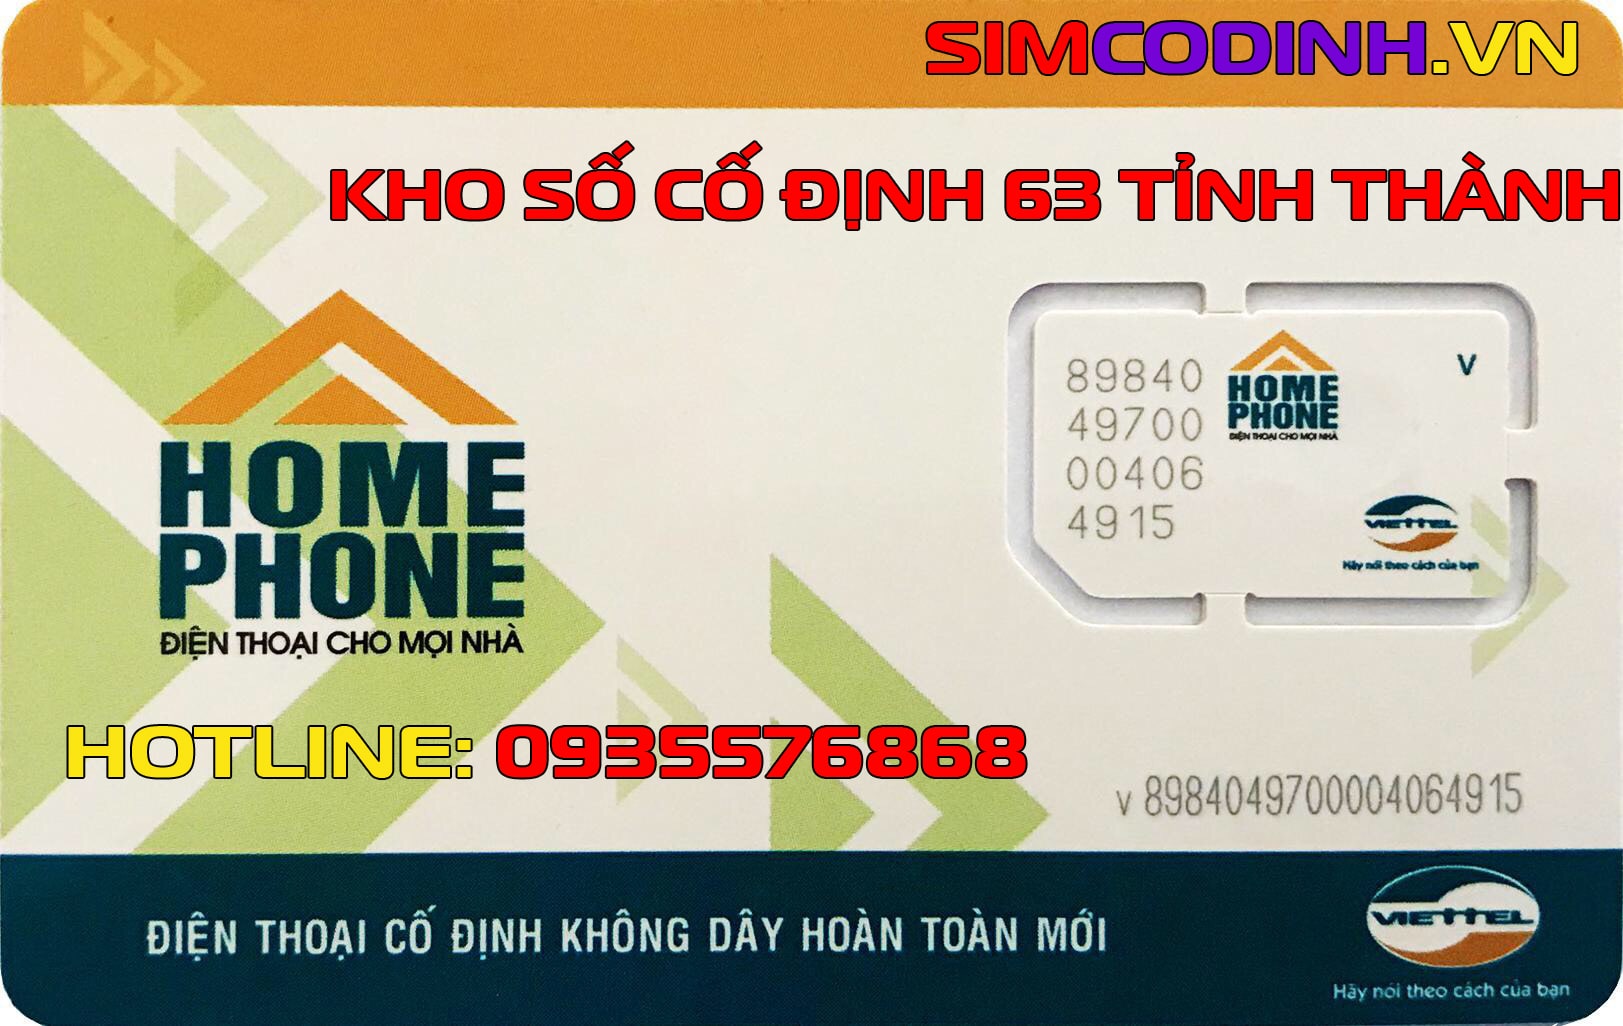 SimCoDinh.vn mua bán sim cố định Homephone Viettel Gphone đầu số 02